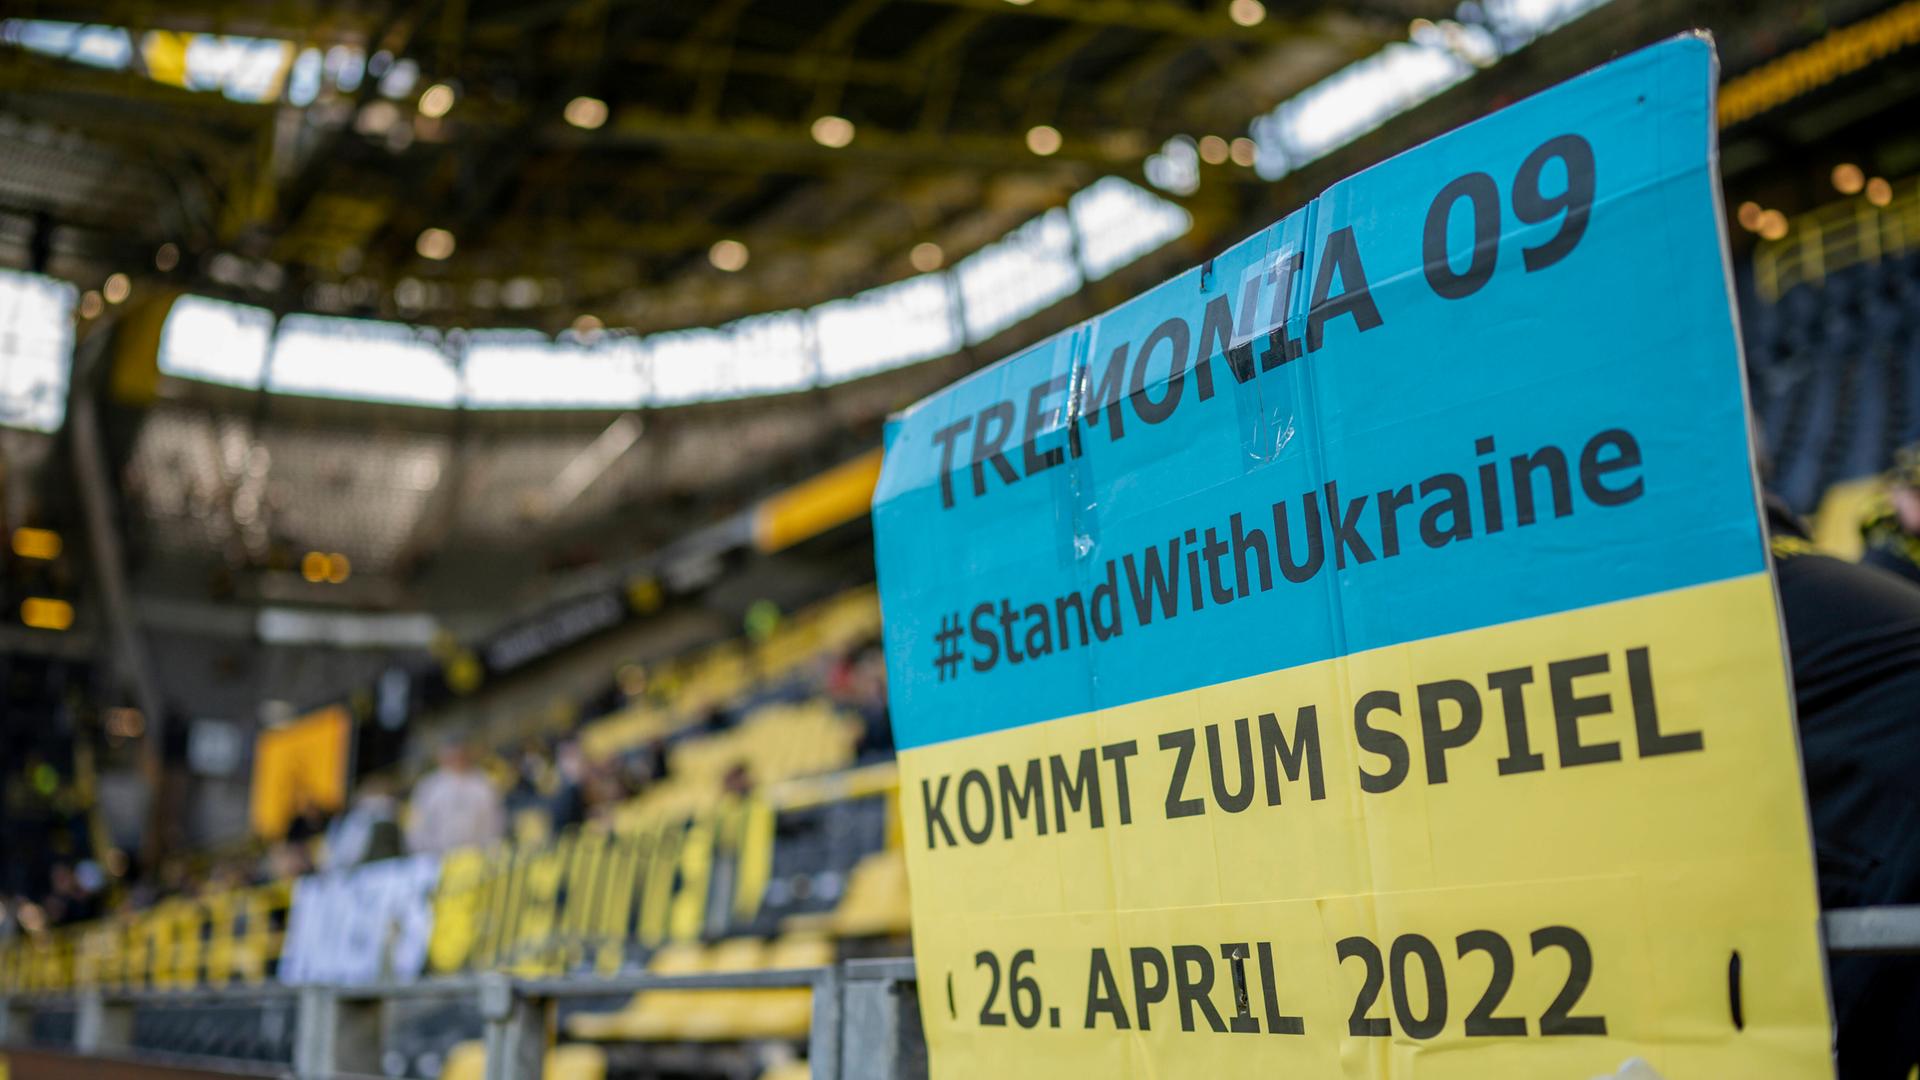 Ein Poster im Dortmunder Stadion ruft auf, zum Benefizspiel gegen Dynamo Kiew zu kommen.